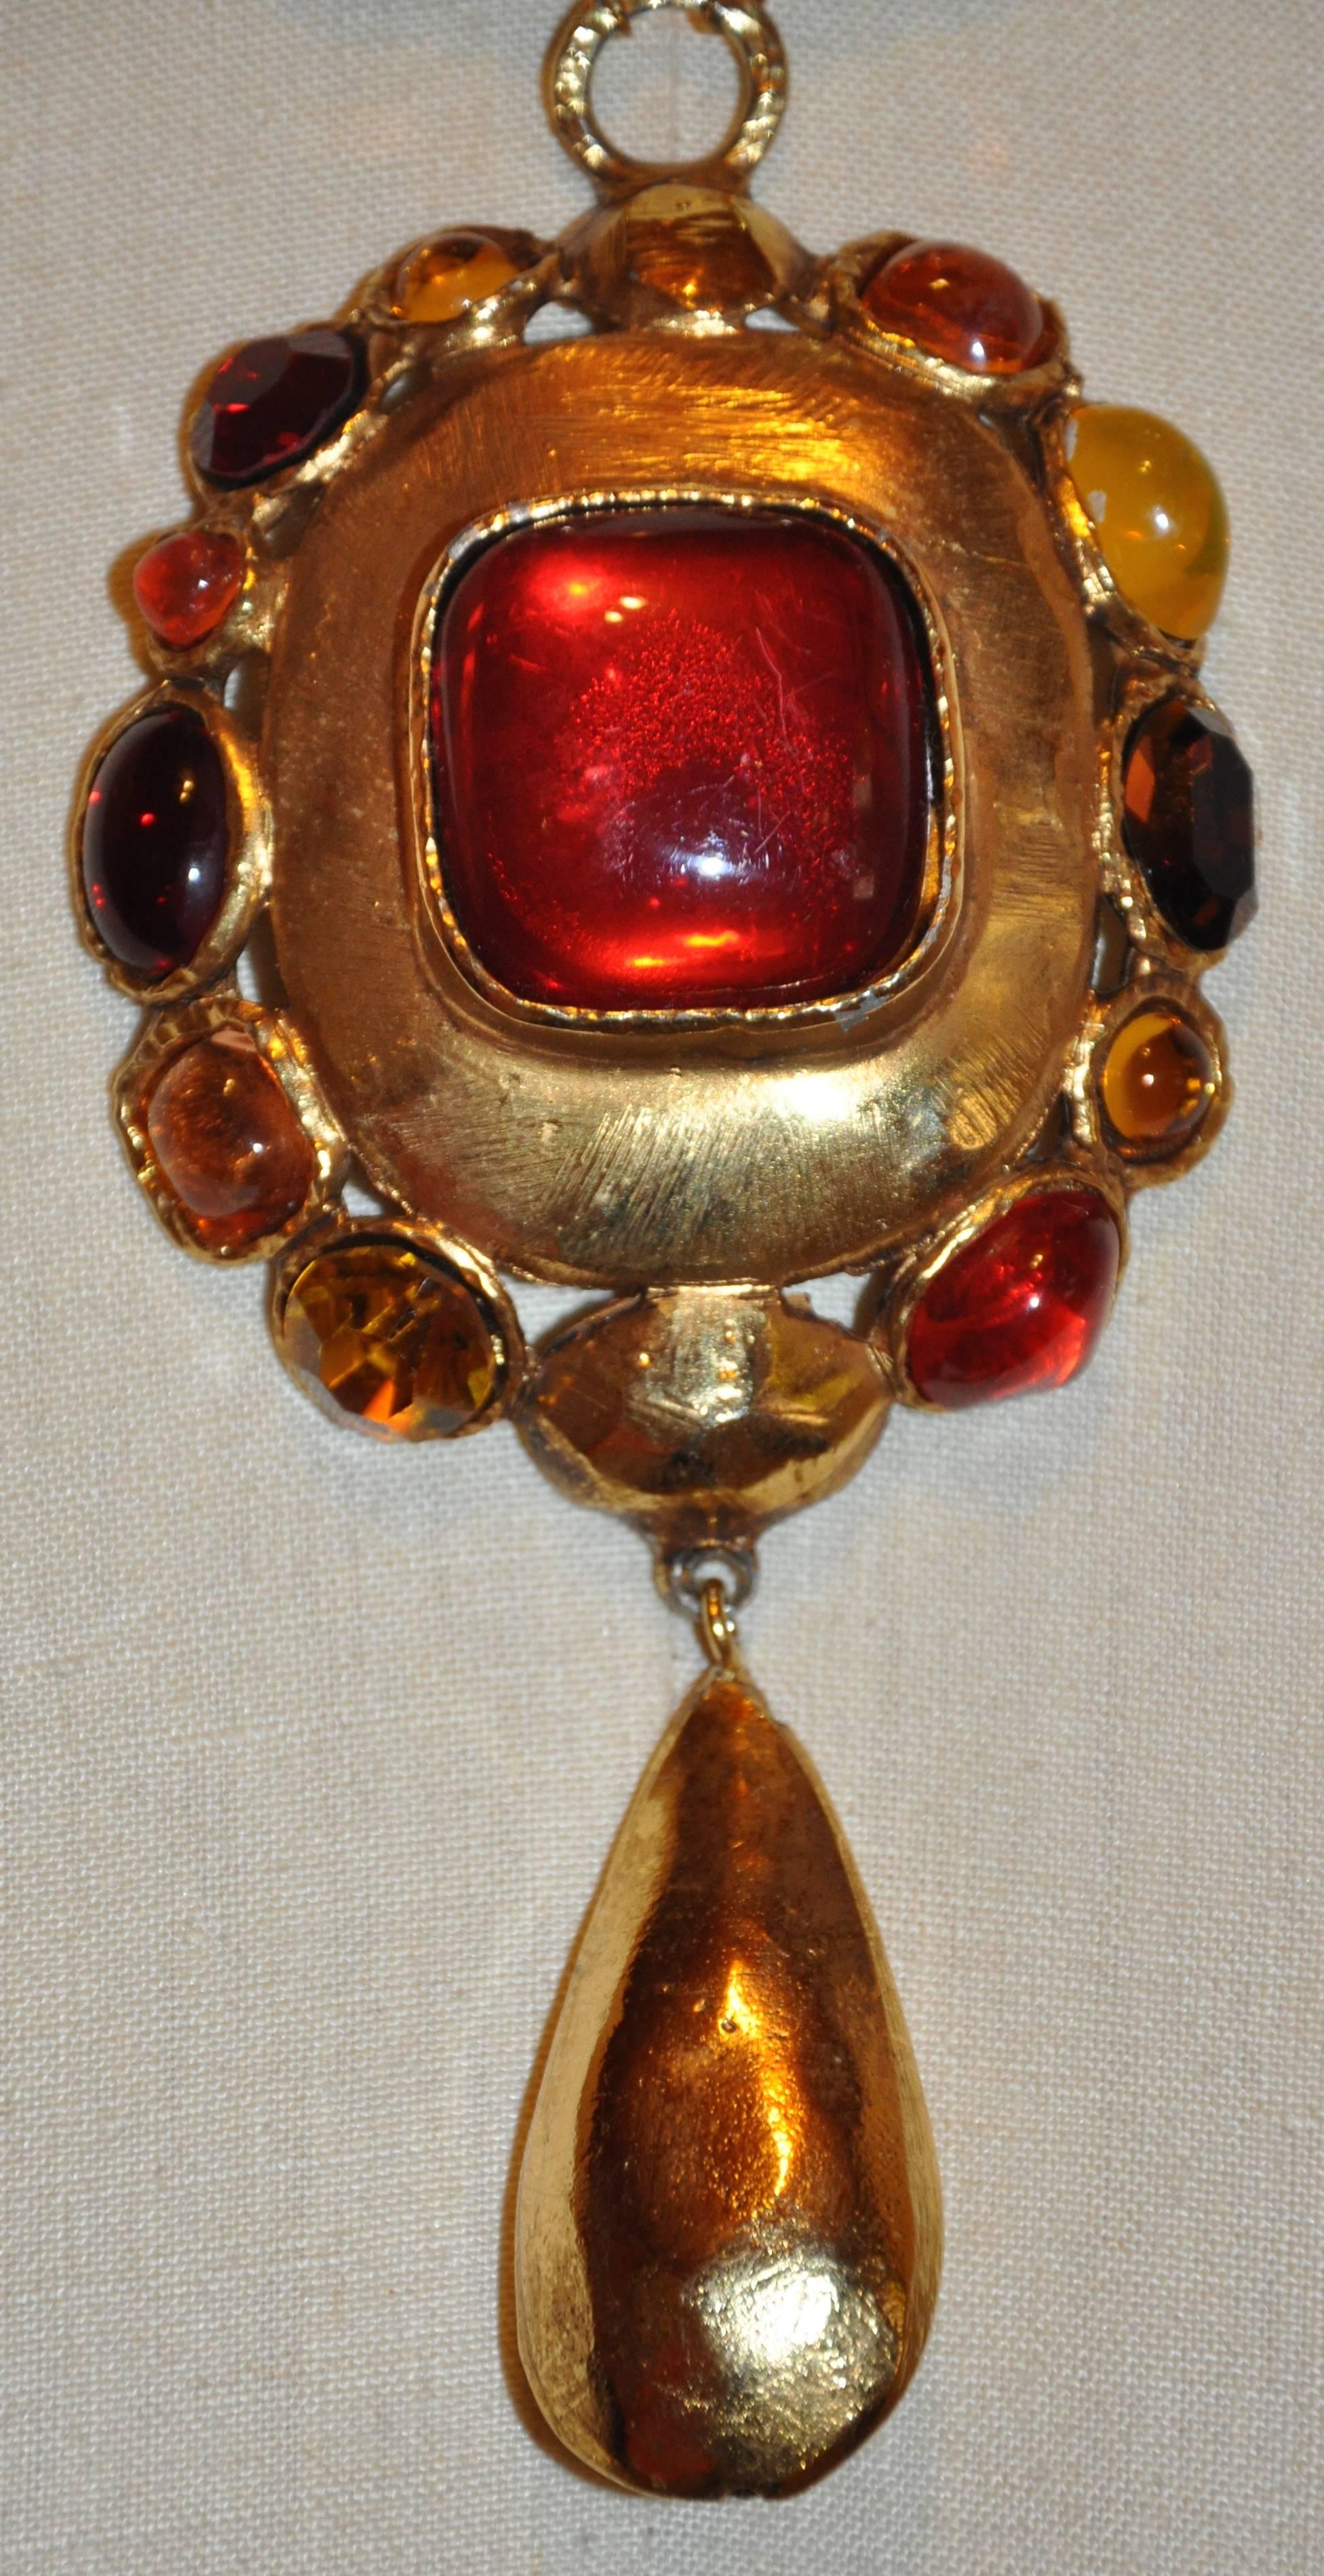           Le pendentif Emanuel Ungaro, merveilleusement méchant et impressionnant, est composé d'une énorme combinaison de verres à couler et de fausses pierres multicolores serties dans un pendentif en or doré. Il est associé à un collier tout